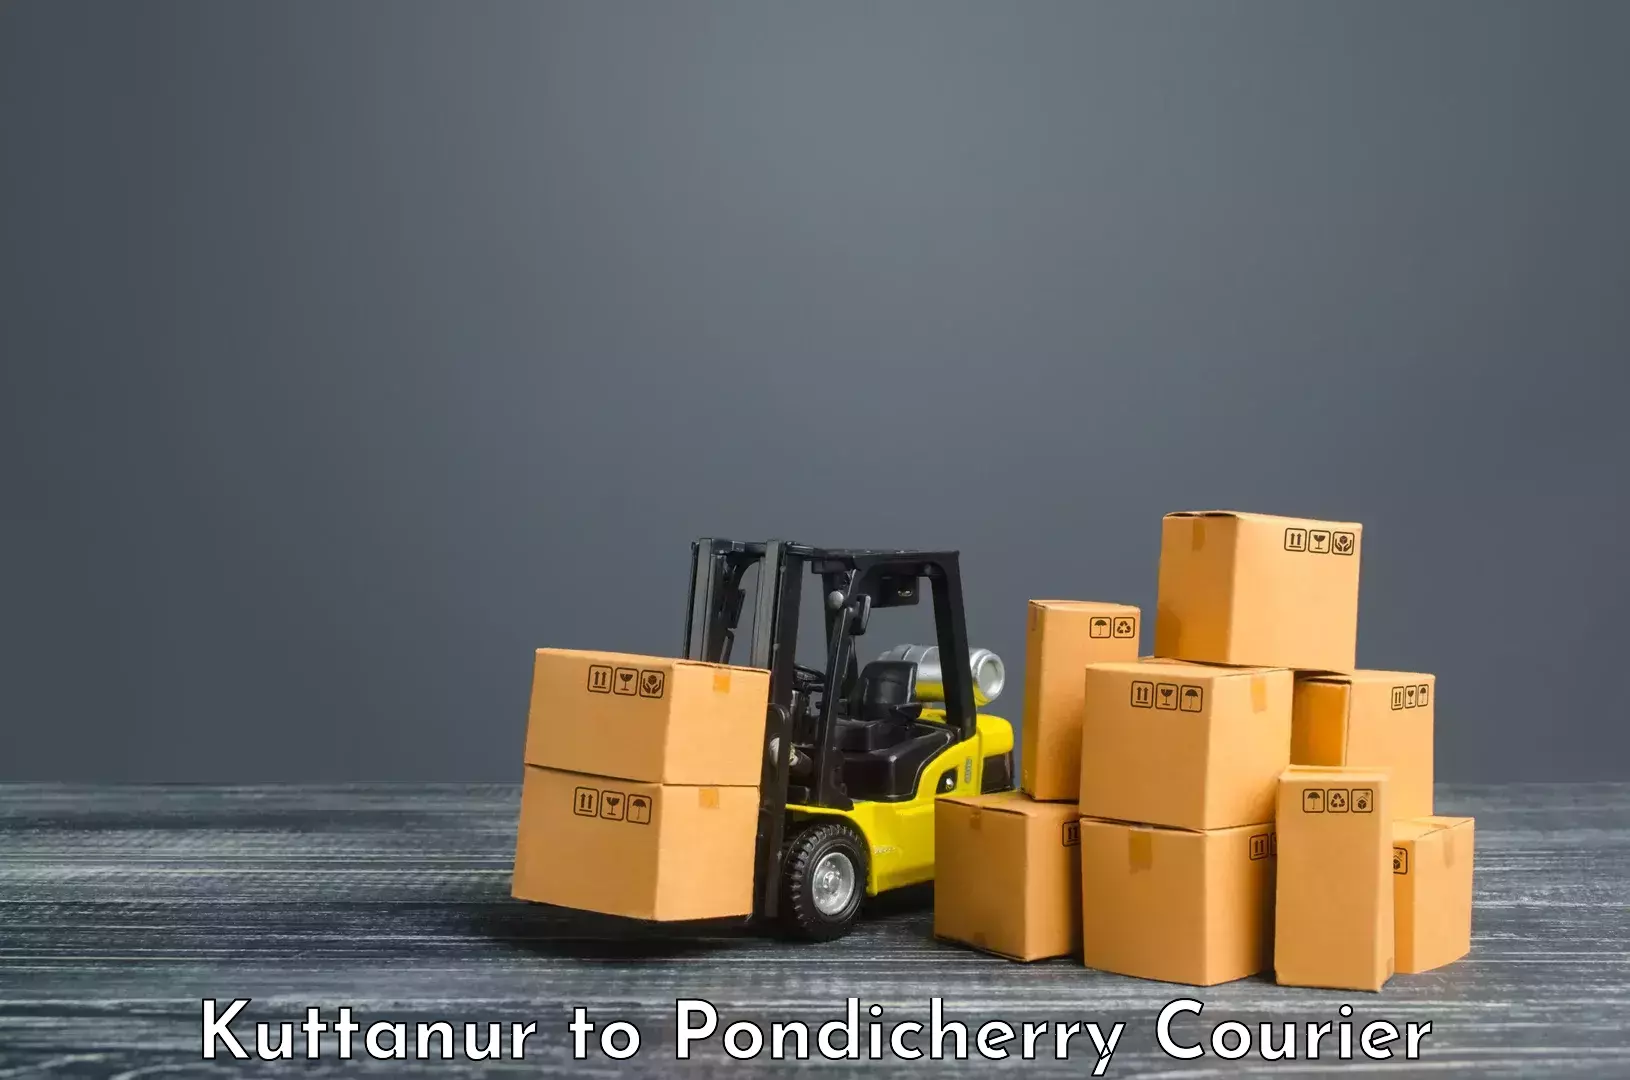 Quick dispatch service Kuttanur to Pondicherry